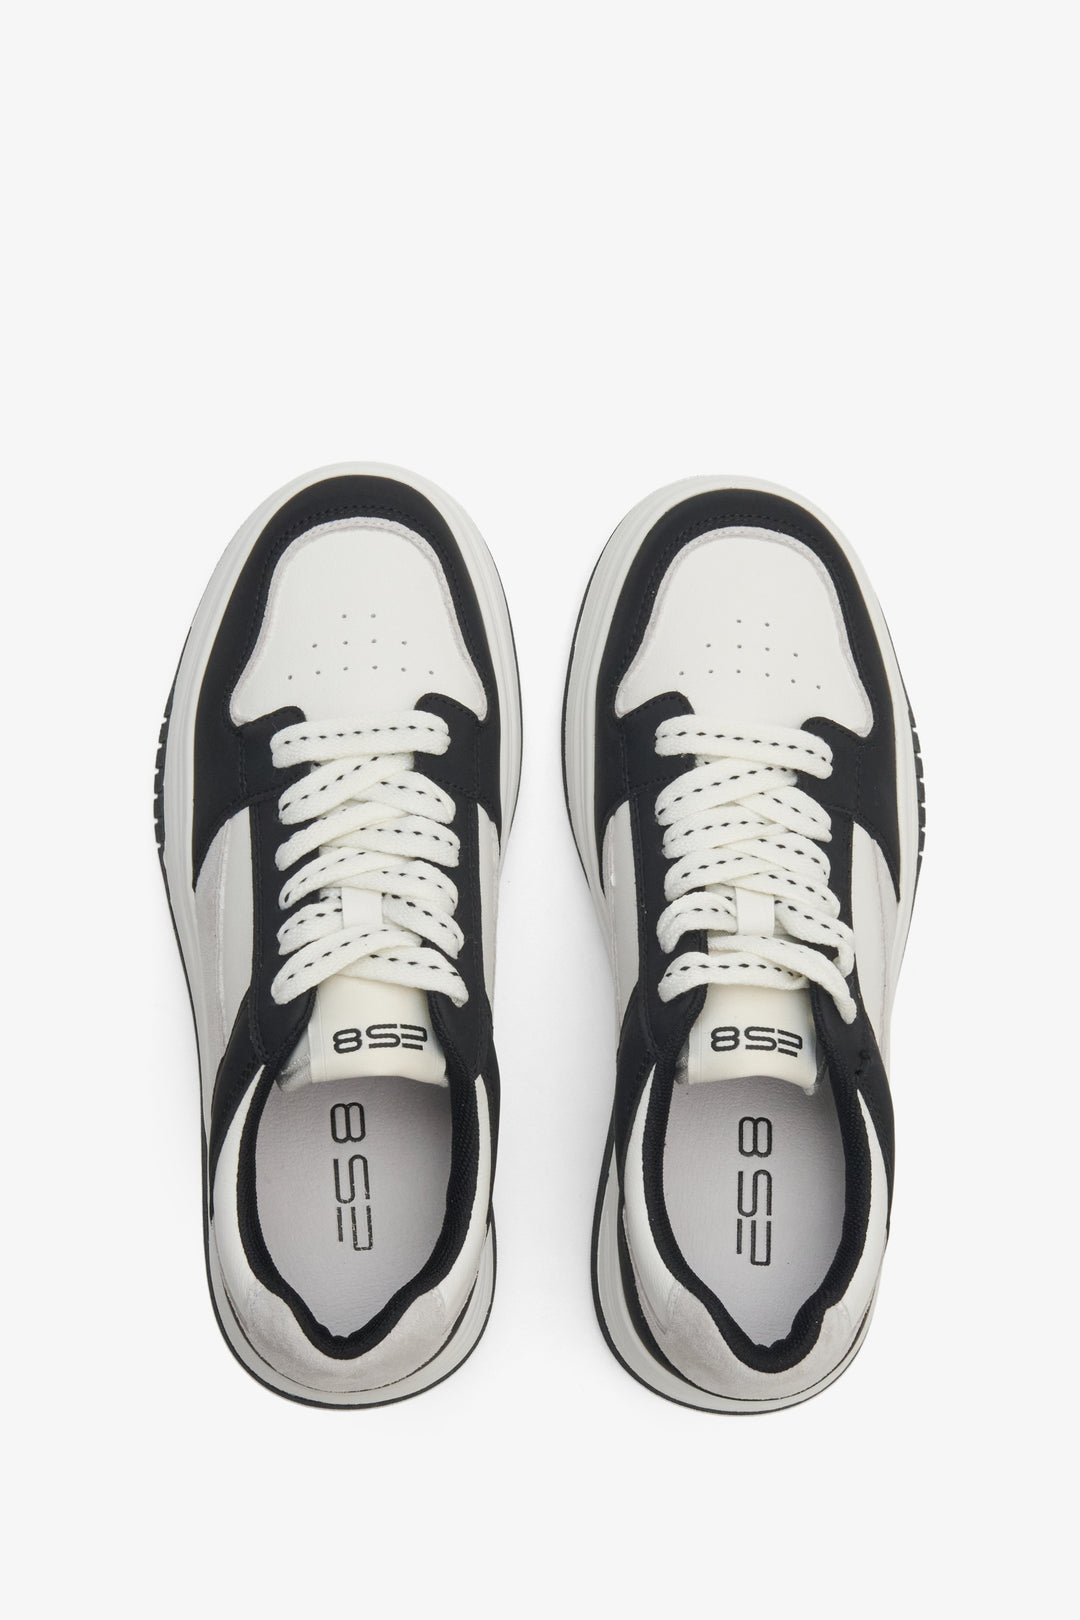 Damskie, skórzane sneakersy z linii sportowej ES 8 w kolorze biało-czarnym - prezentacja obuwia z góry.